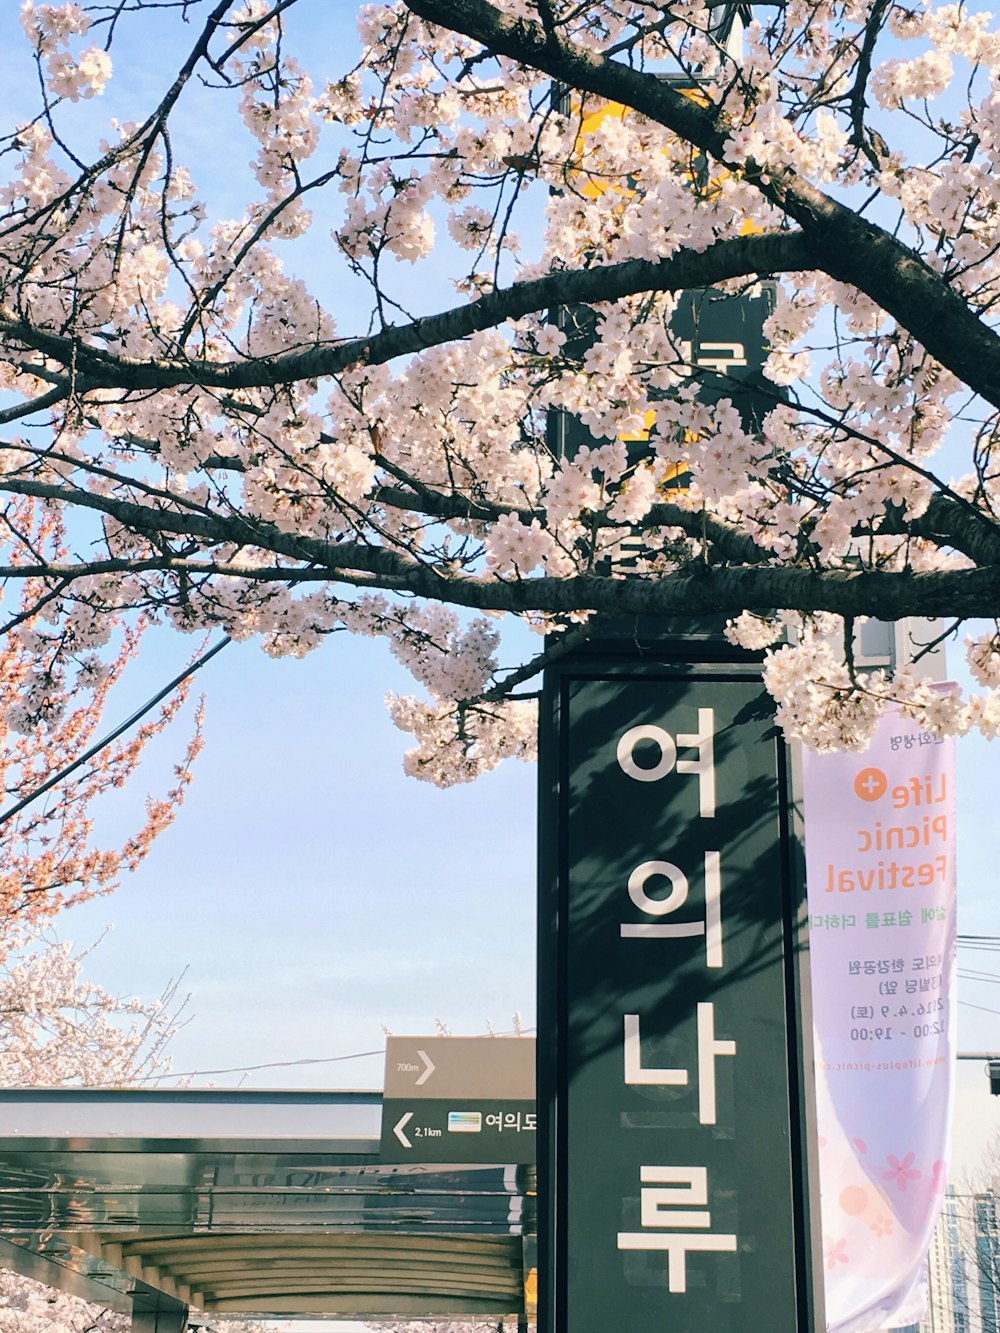 letrero de cobertizo verde con texto hangul durante el día al lado del árbol con flores de color rosa claro durante el día